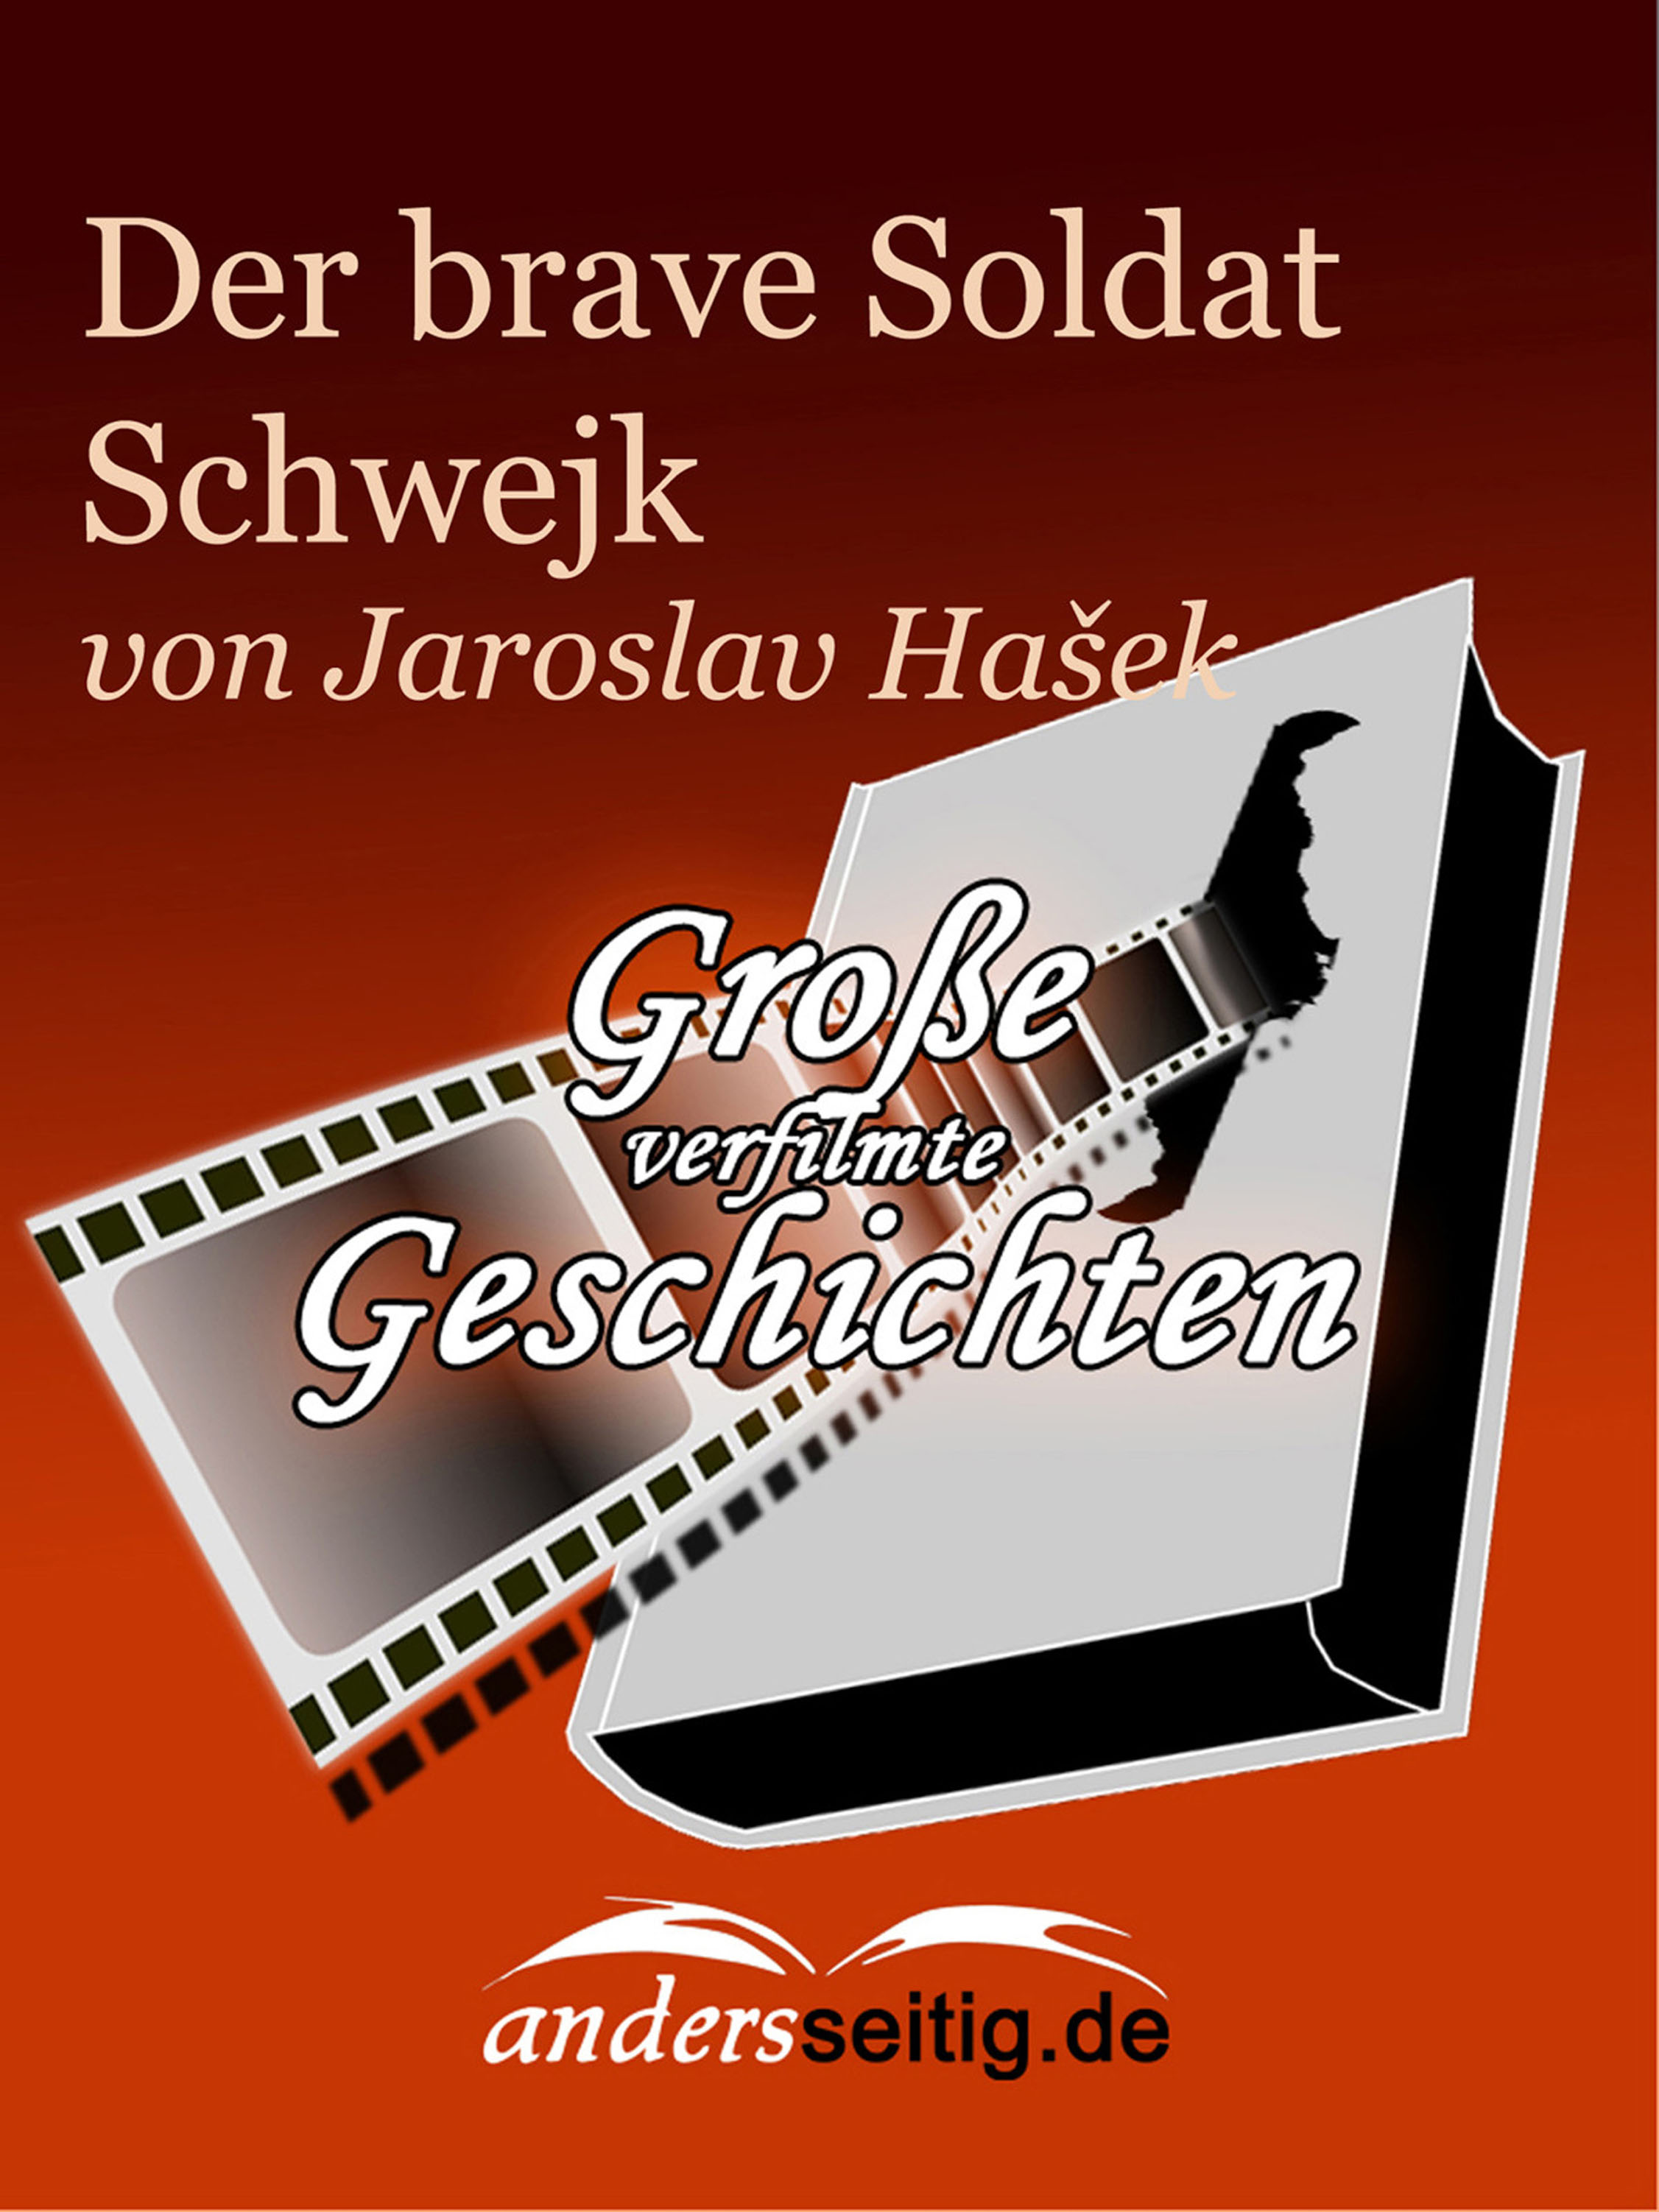 Die Abenteuer des braven Soldaten Schwejk (Jaroslav Hašek - Die Abenteuer Des Braven Soldaten Schwejk